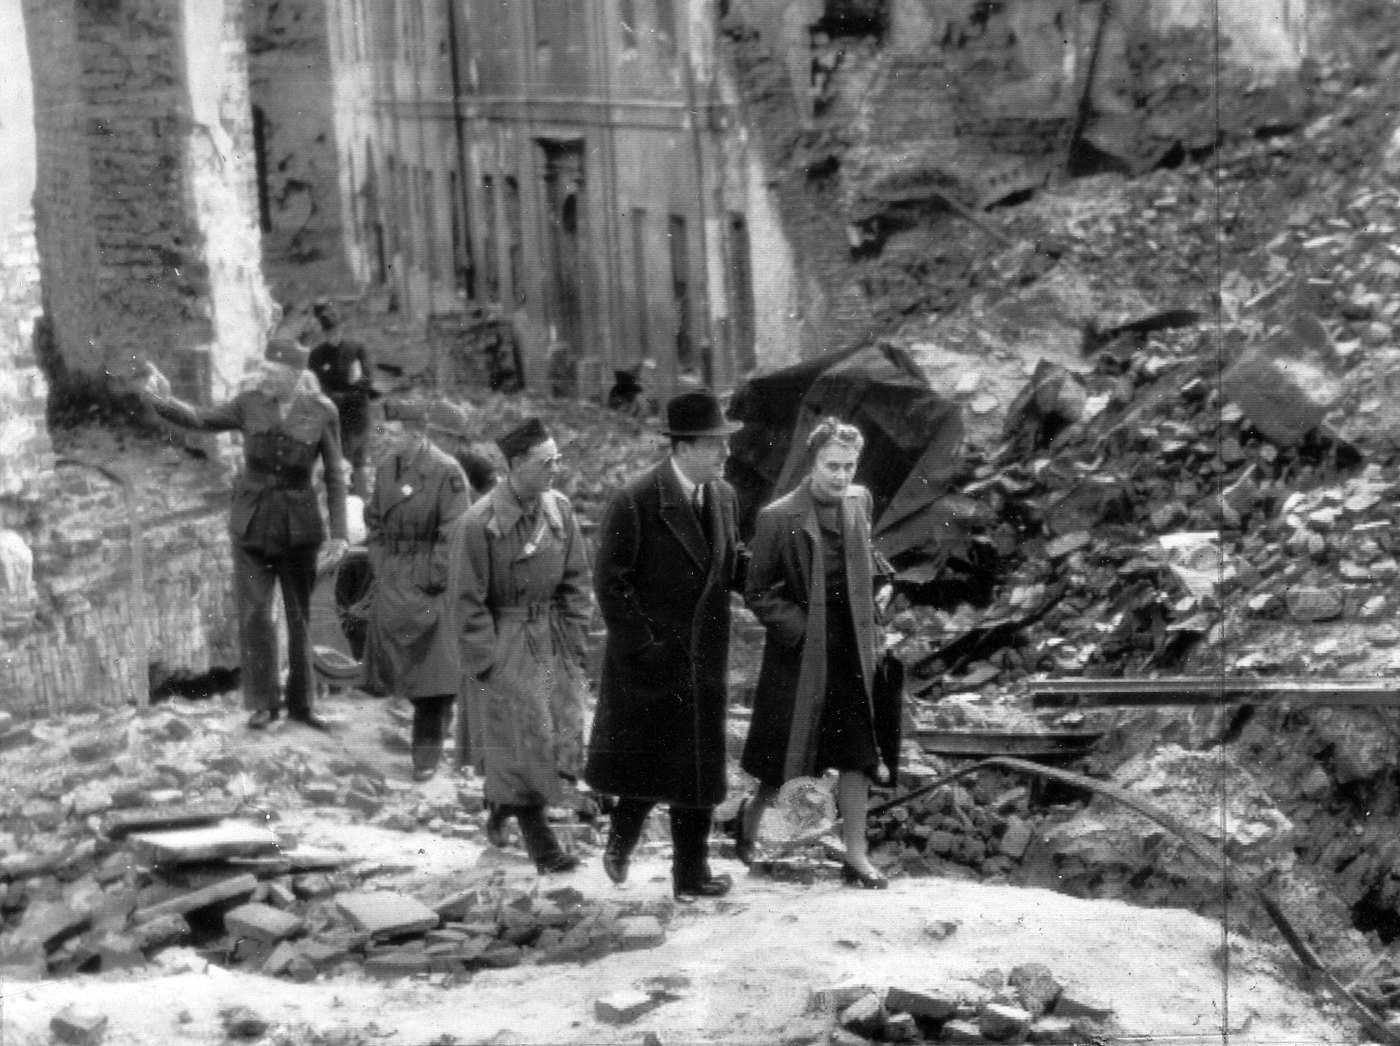 Na zdjęciu Ambasador USA w Polsce, Arthur Bliss-Lane w ruinach Warszawy, 1945 rok Ambasador idzie pod rękę z kobietą, prawdopodobnie żoną pośród ruin miasta. Za nimi grupa kilku żołnierzy amerykańskich.